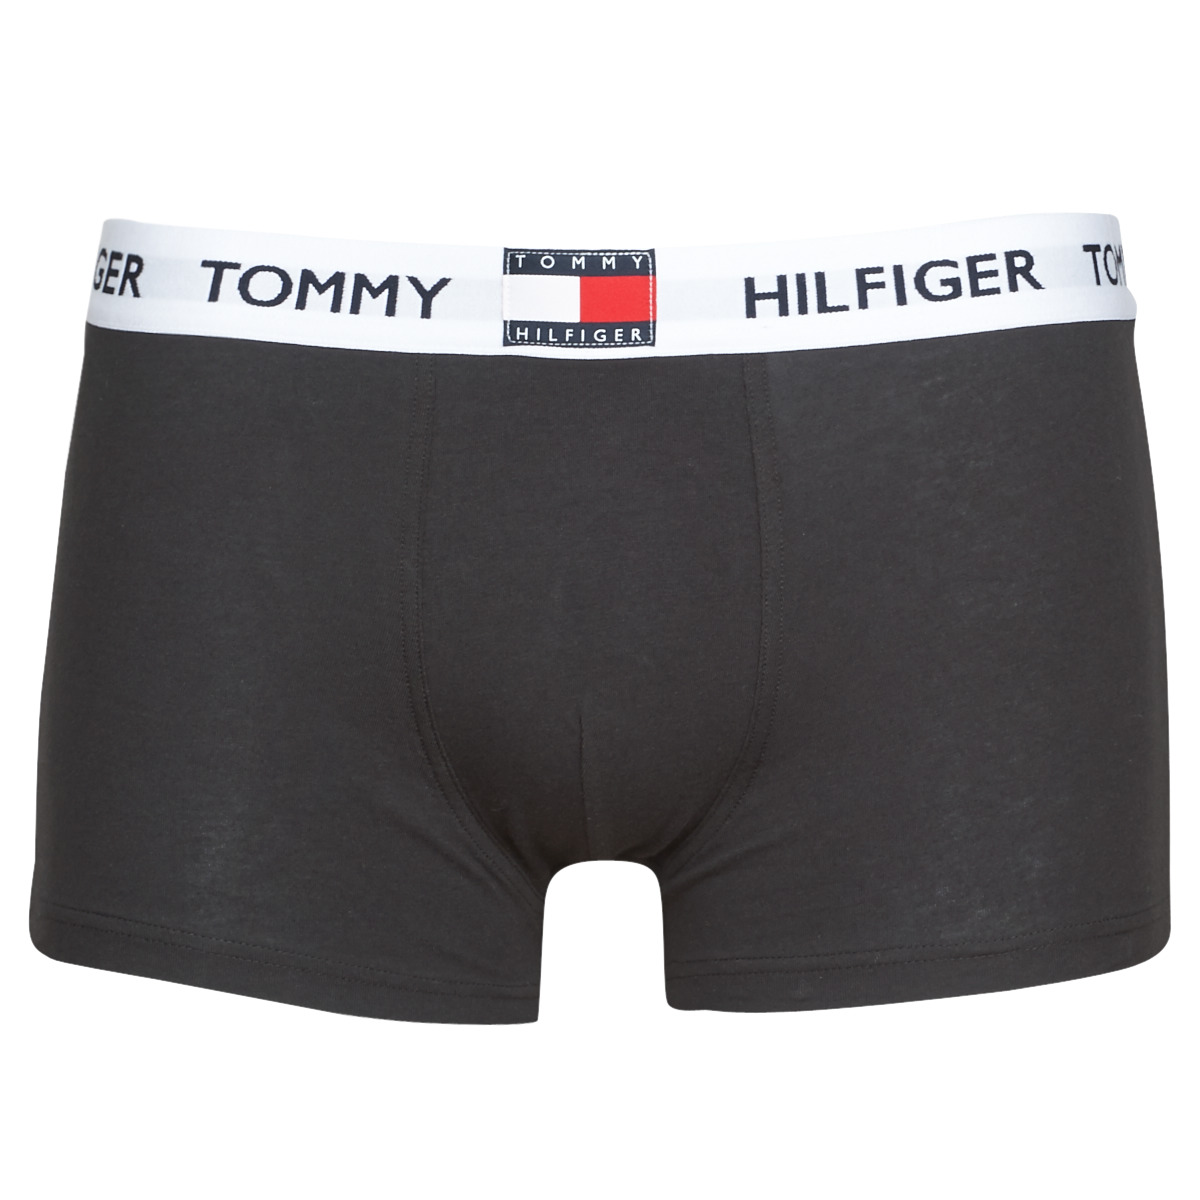 Sous-vêtements Homme Tommy Hilfiger chunky Chelsea boots Black UM0UM01810-BEH-NOOS Noir